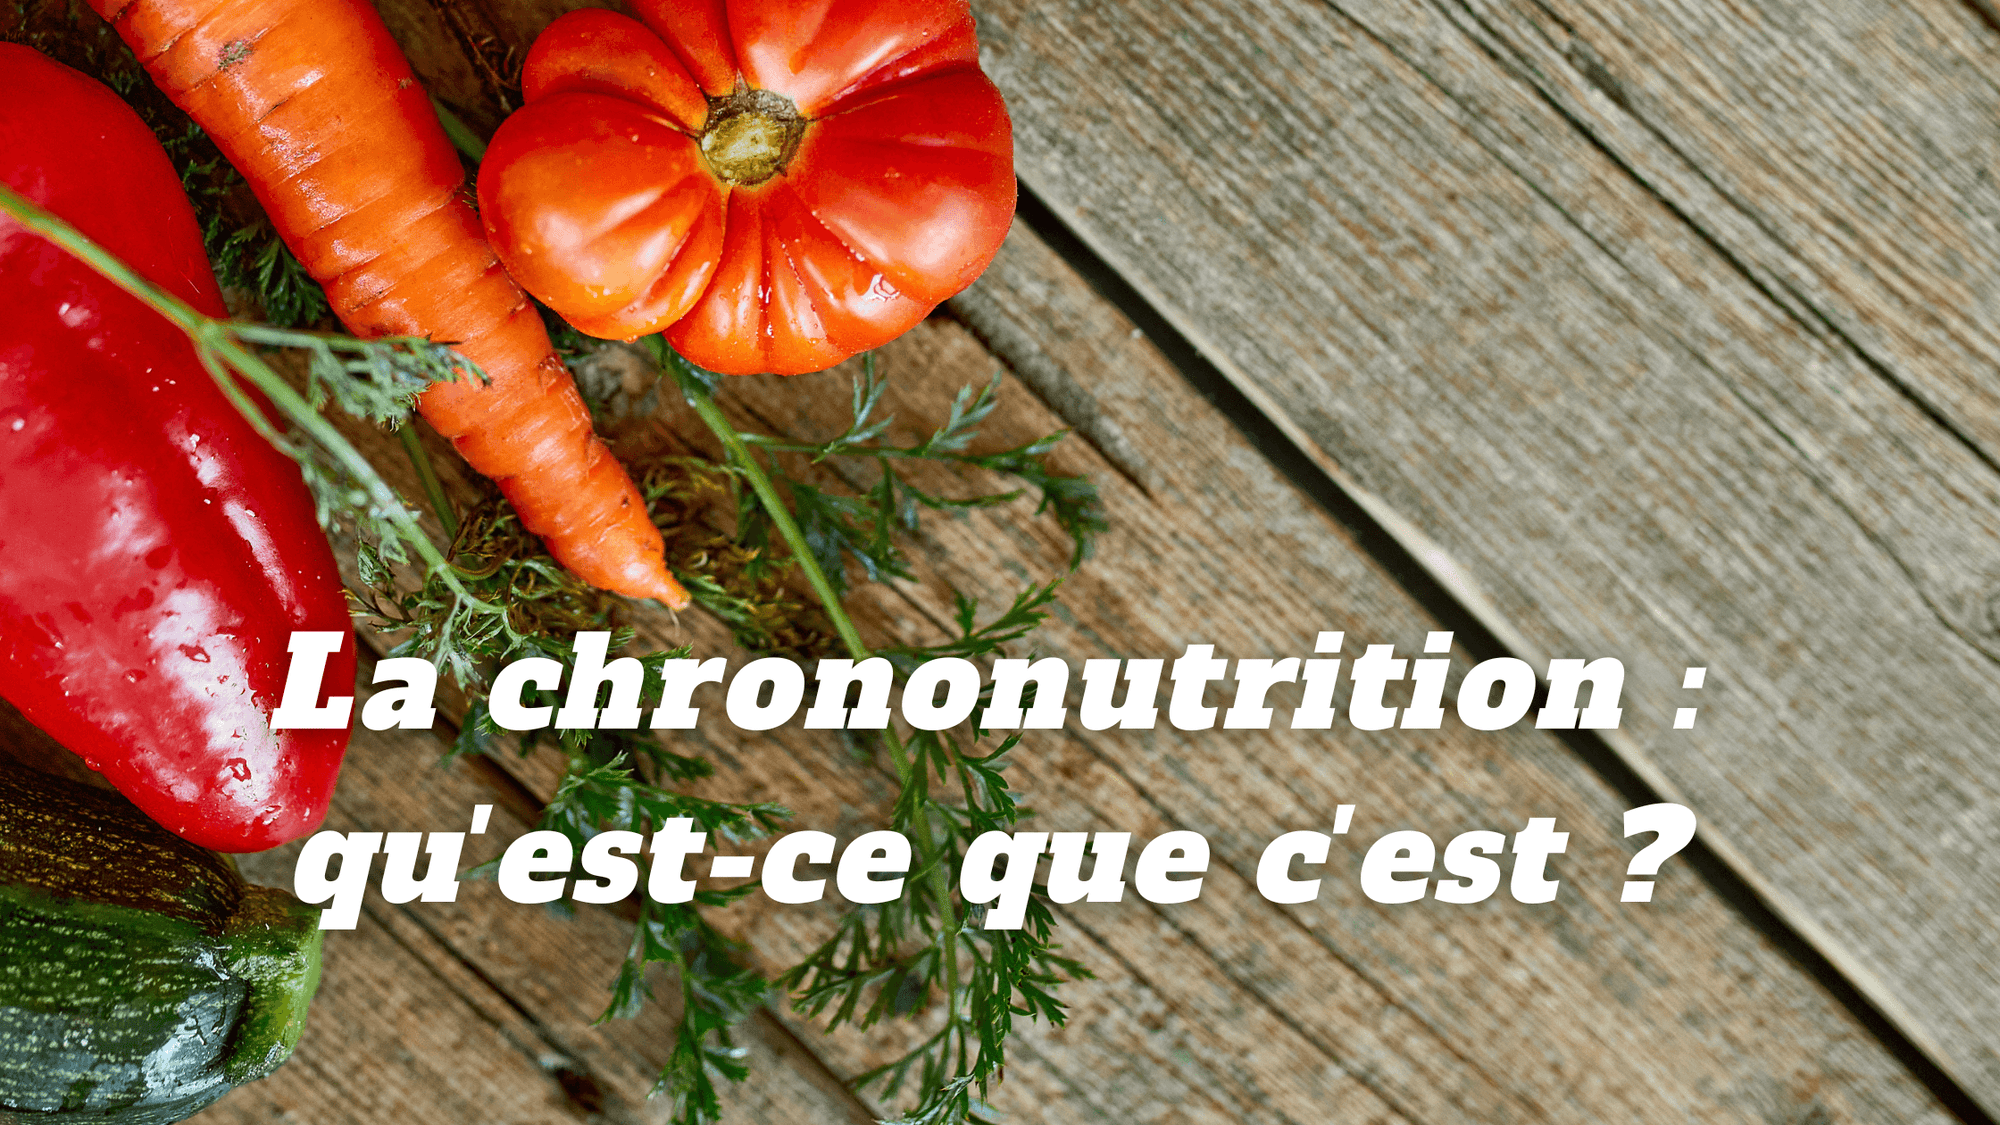 La chrononutrition : qu'est-ce que c'est ?